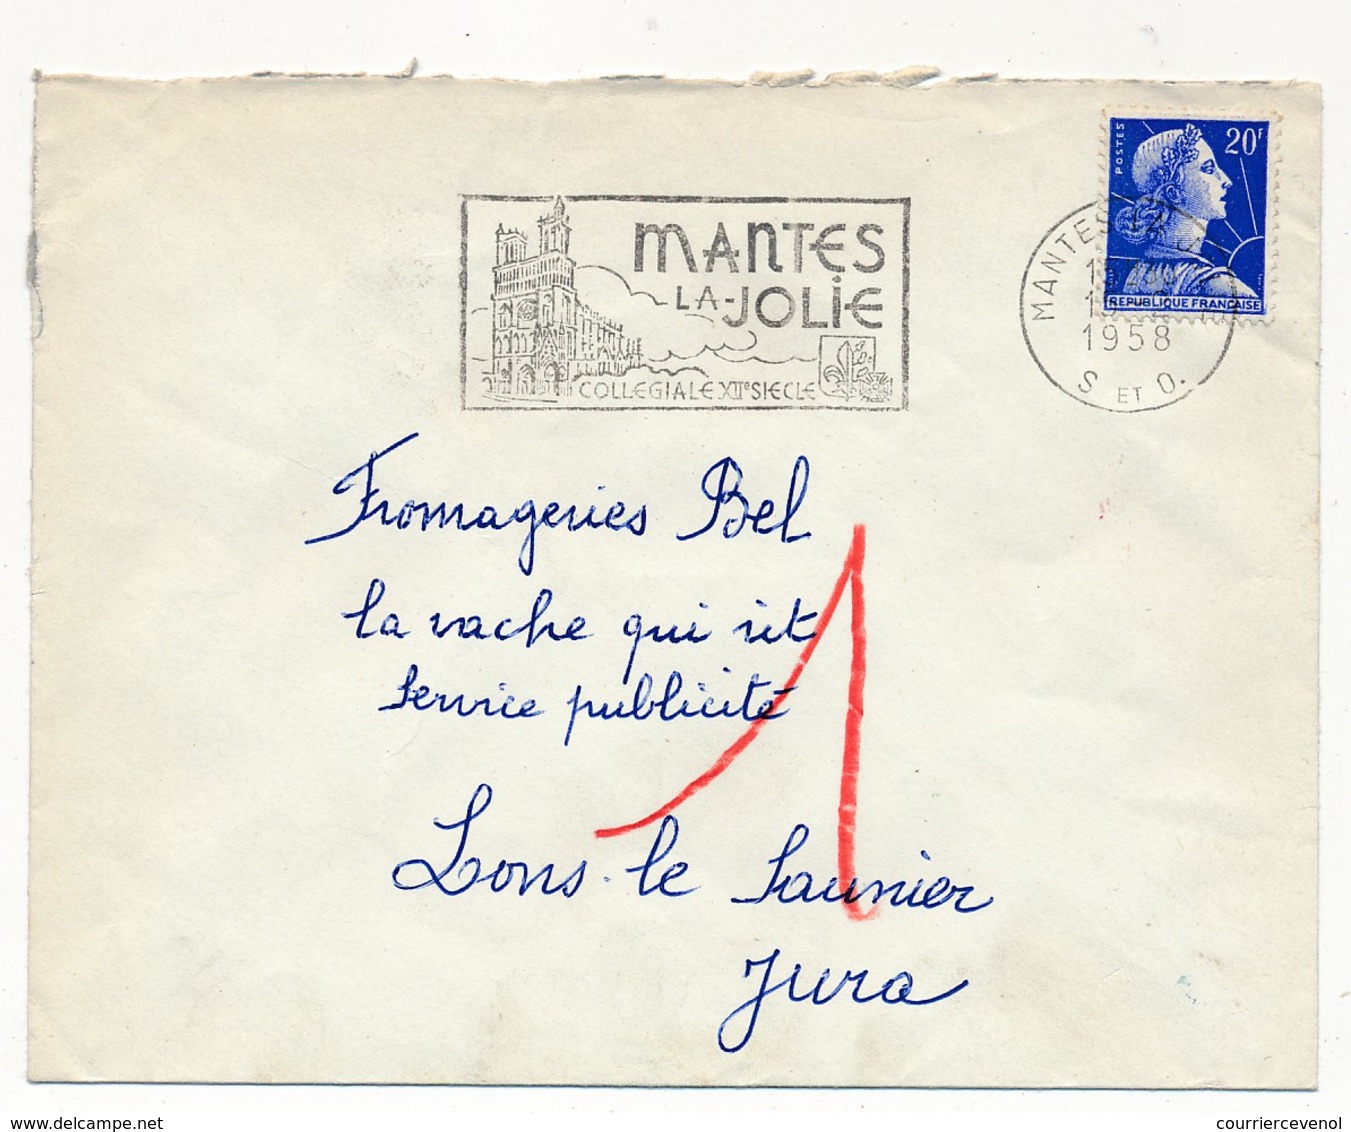 Enveloppe - OMEC Secap - MANTES LA-JOLIE (S Et O) - ...Collégiale XIIème Siècle - 1958 - Oblitérations Mécaniques (flammes)